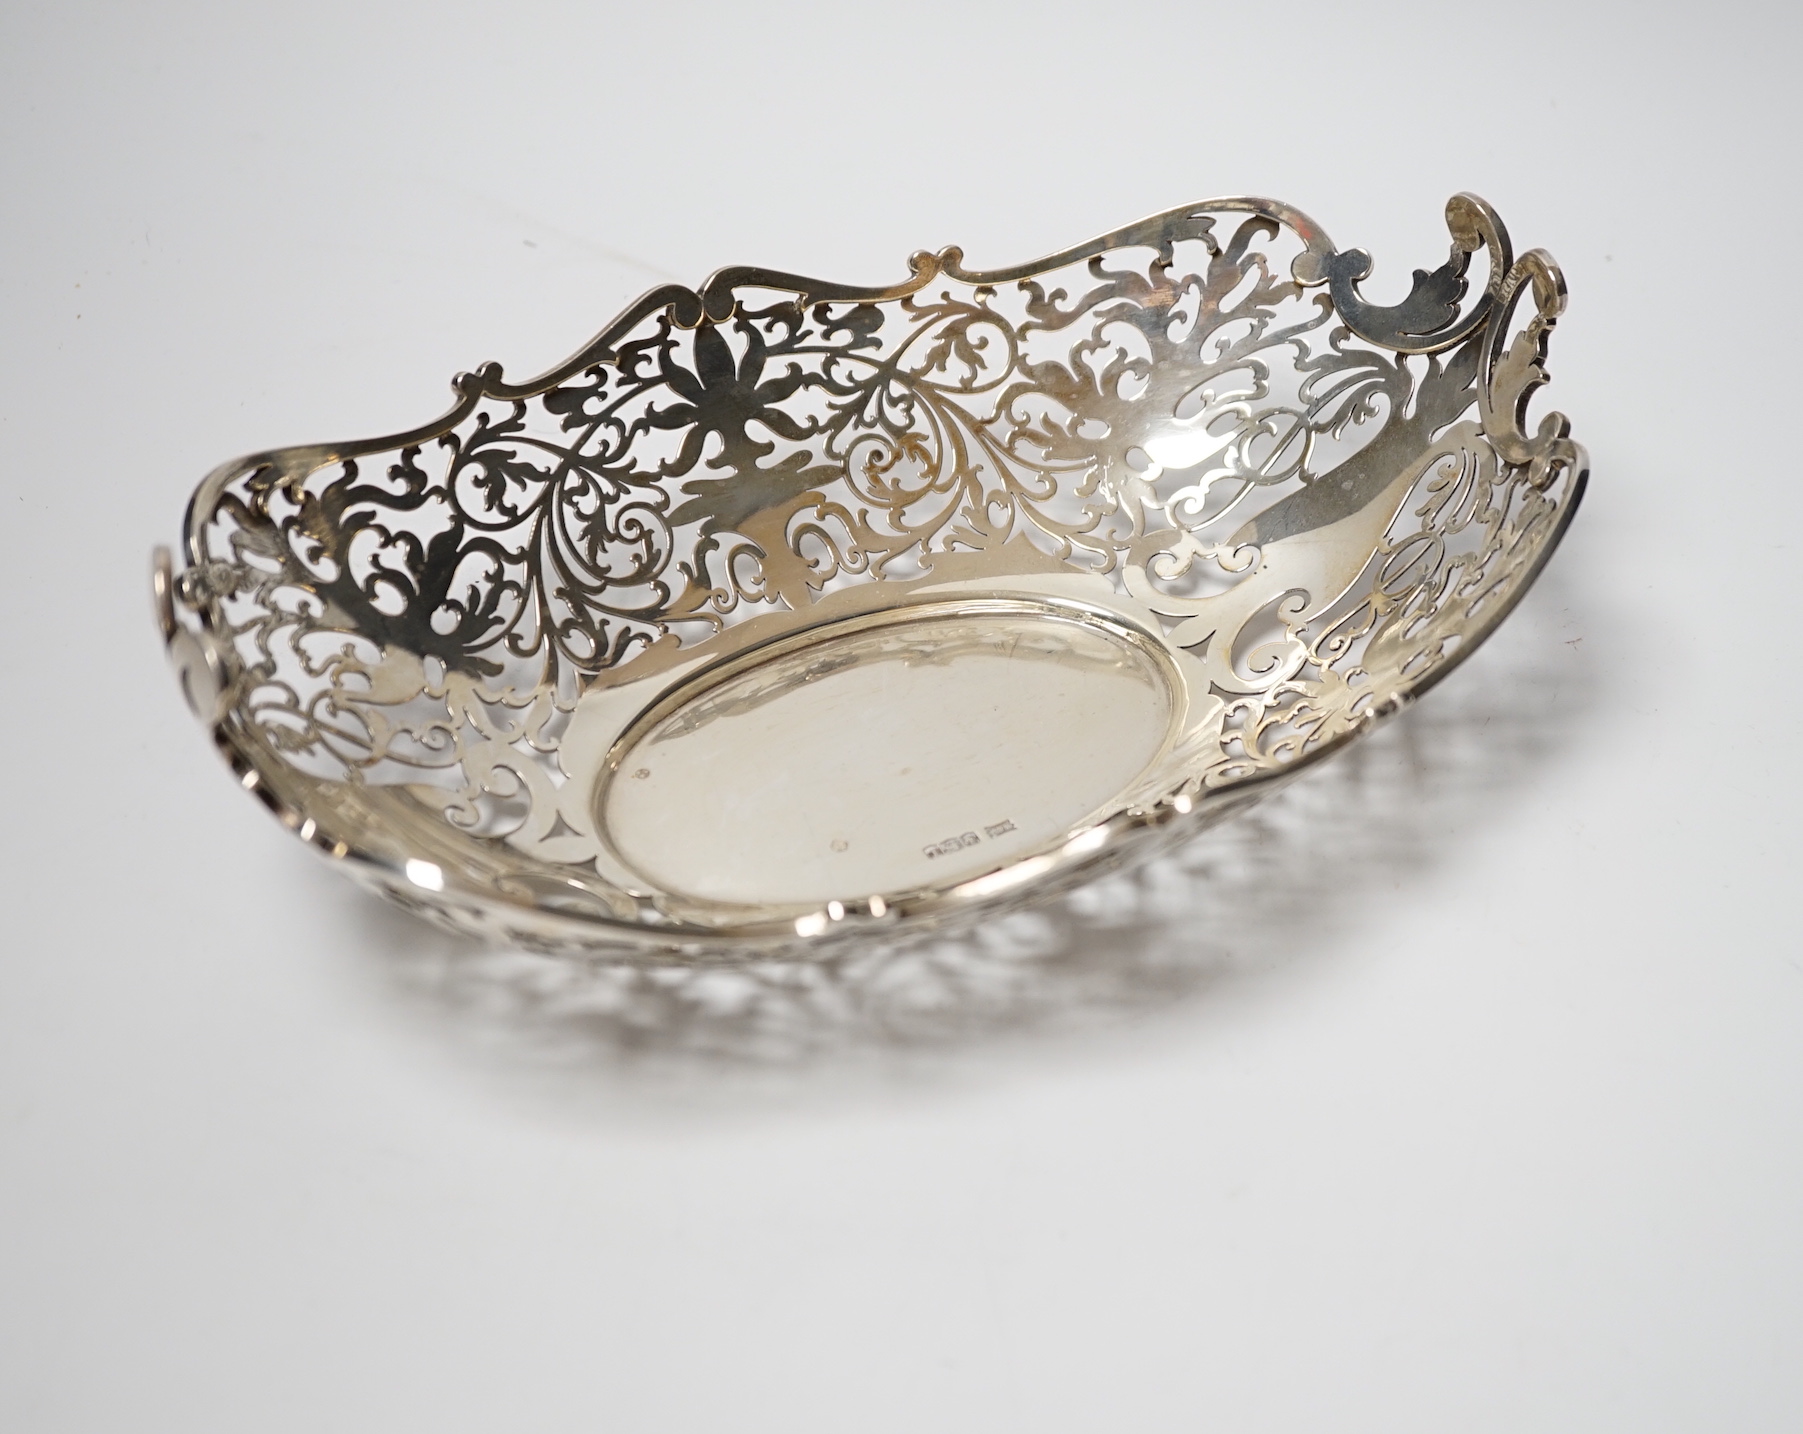 A George V pierced silver oval dish, Walker & Hall, Sheffield, 1928, 25.4cm, 13.4oz